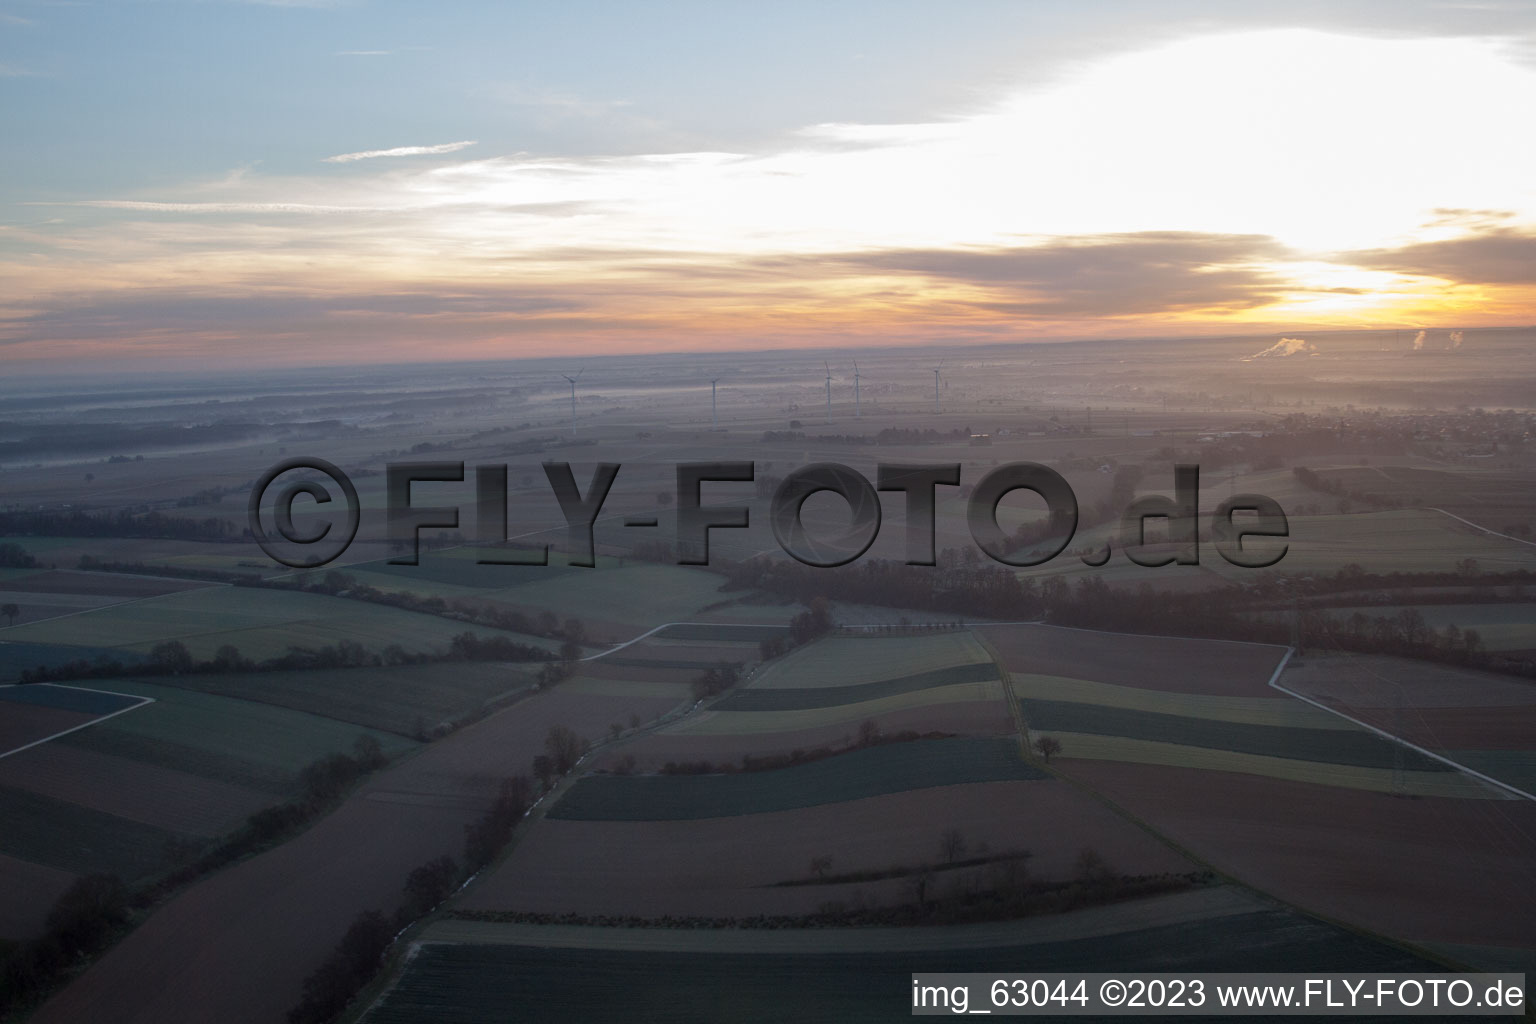 Freckenfeld im Bundesland Rheinland-Pfalz, Deutschland aus der Drohnenperspektive